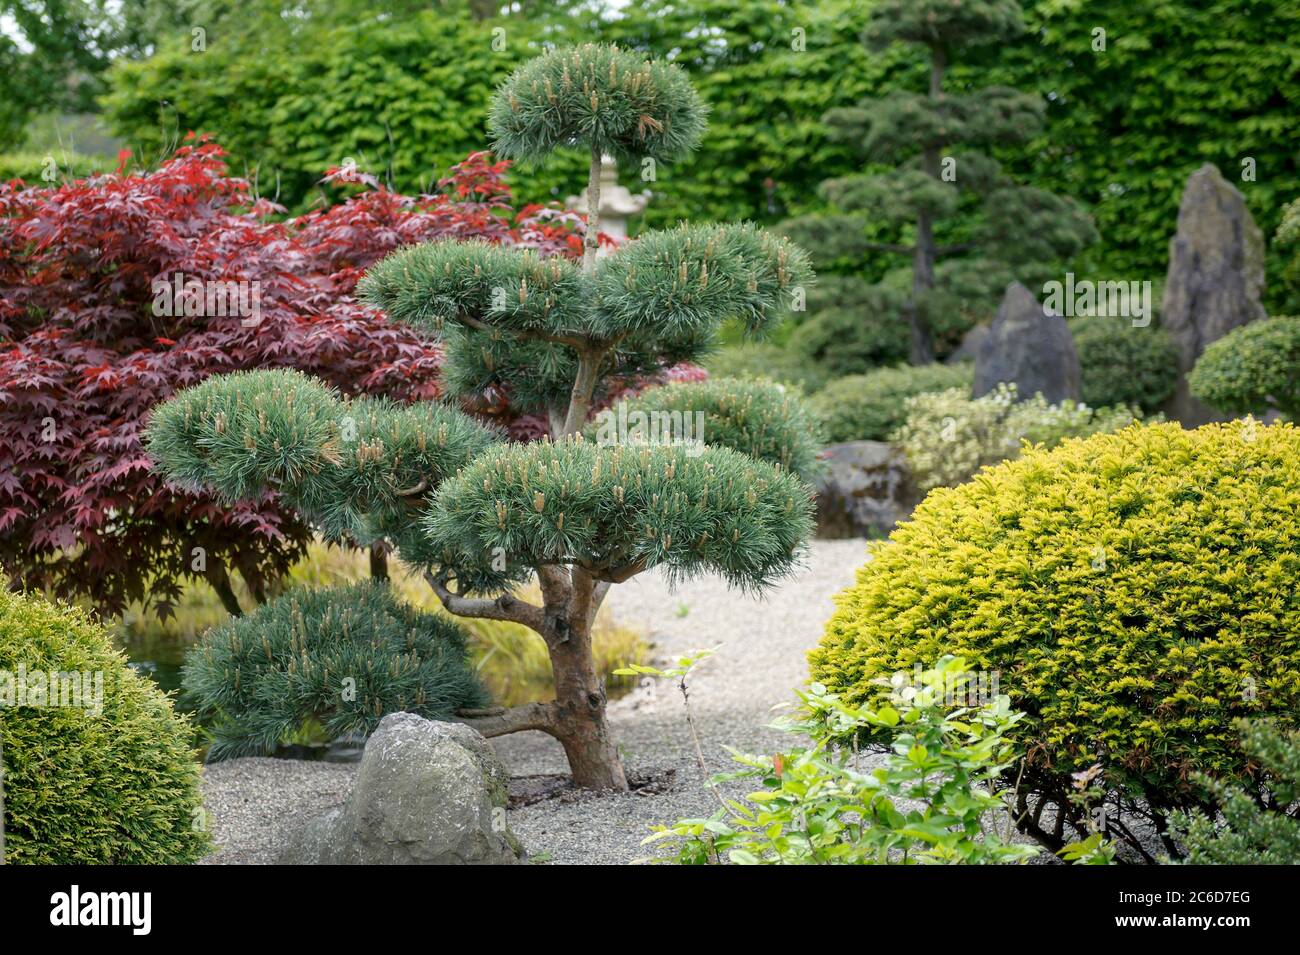 Japanischer Garten, Foehre , Pinus sylvestris Glauca, Japanese garden, pine, Pinus sylvestris Glauca Stock Photo